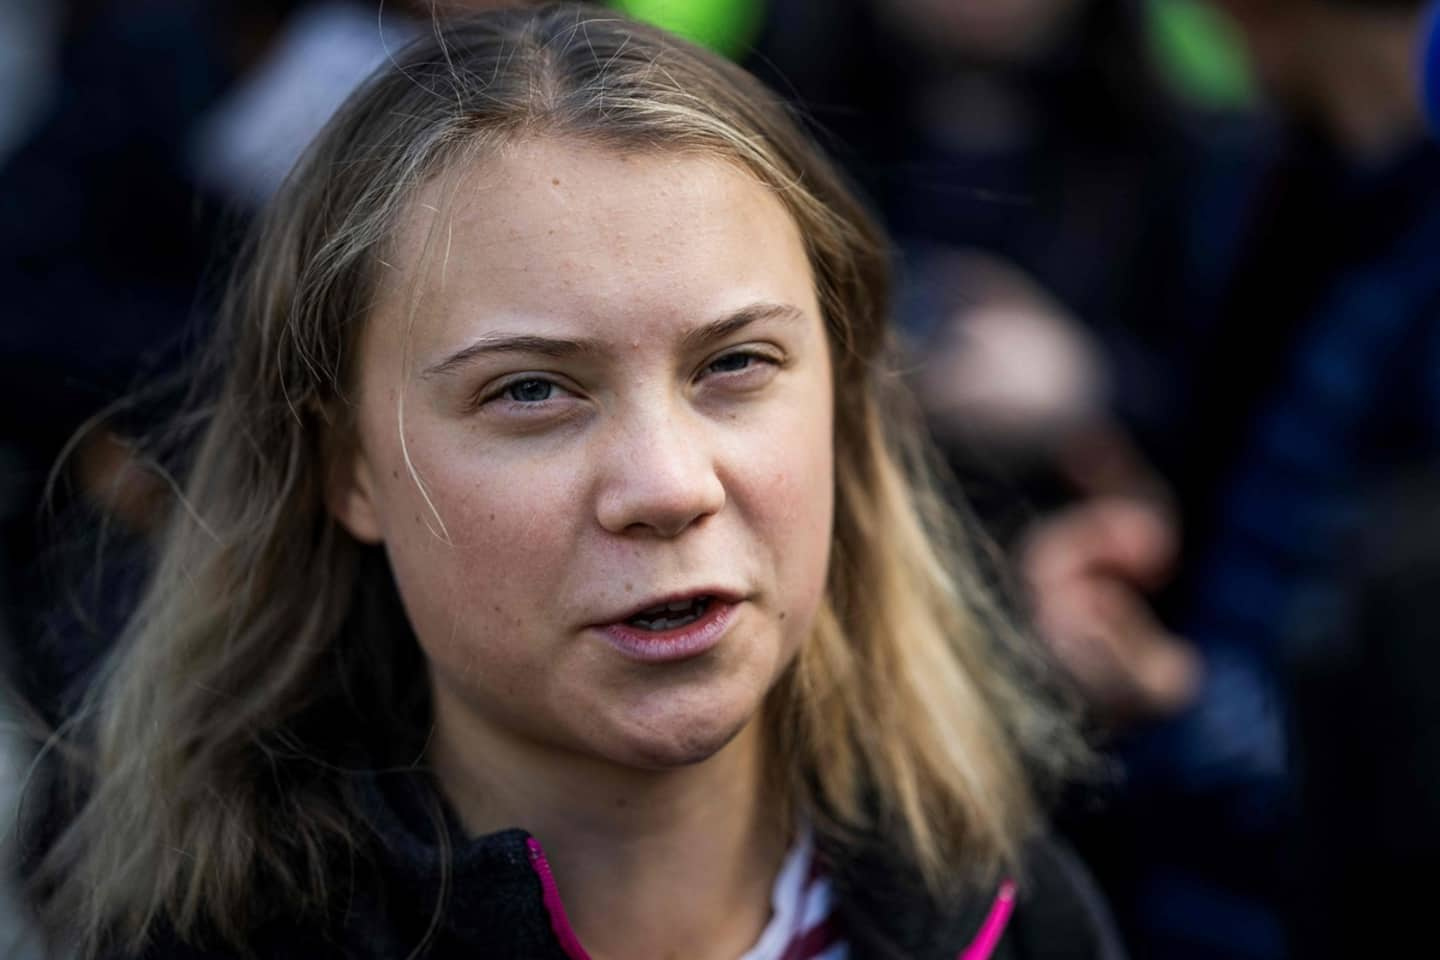 Environmental debate: Greta Thunberg's repartee goes viral on Twitter